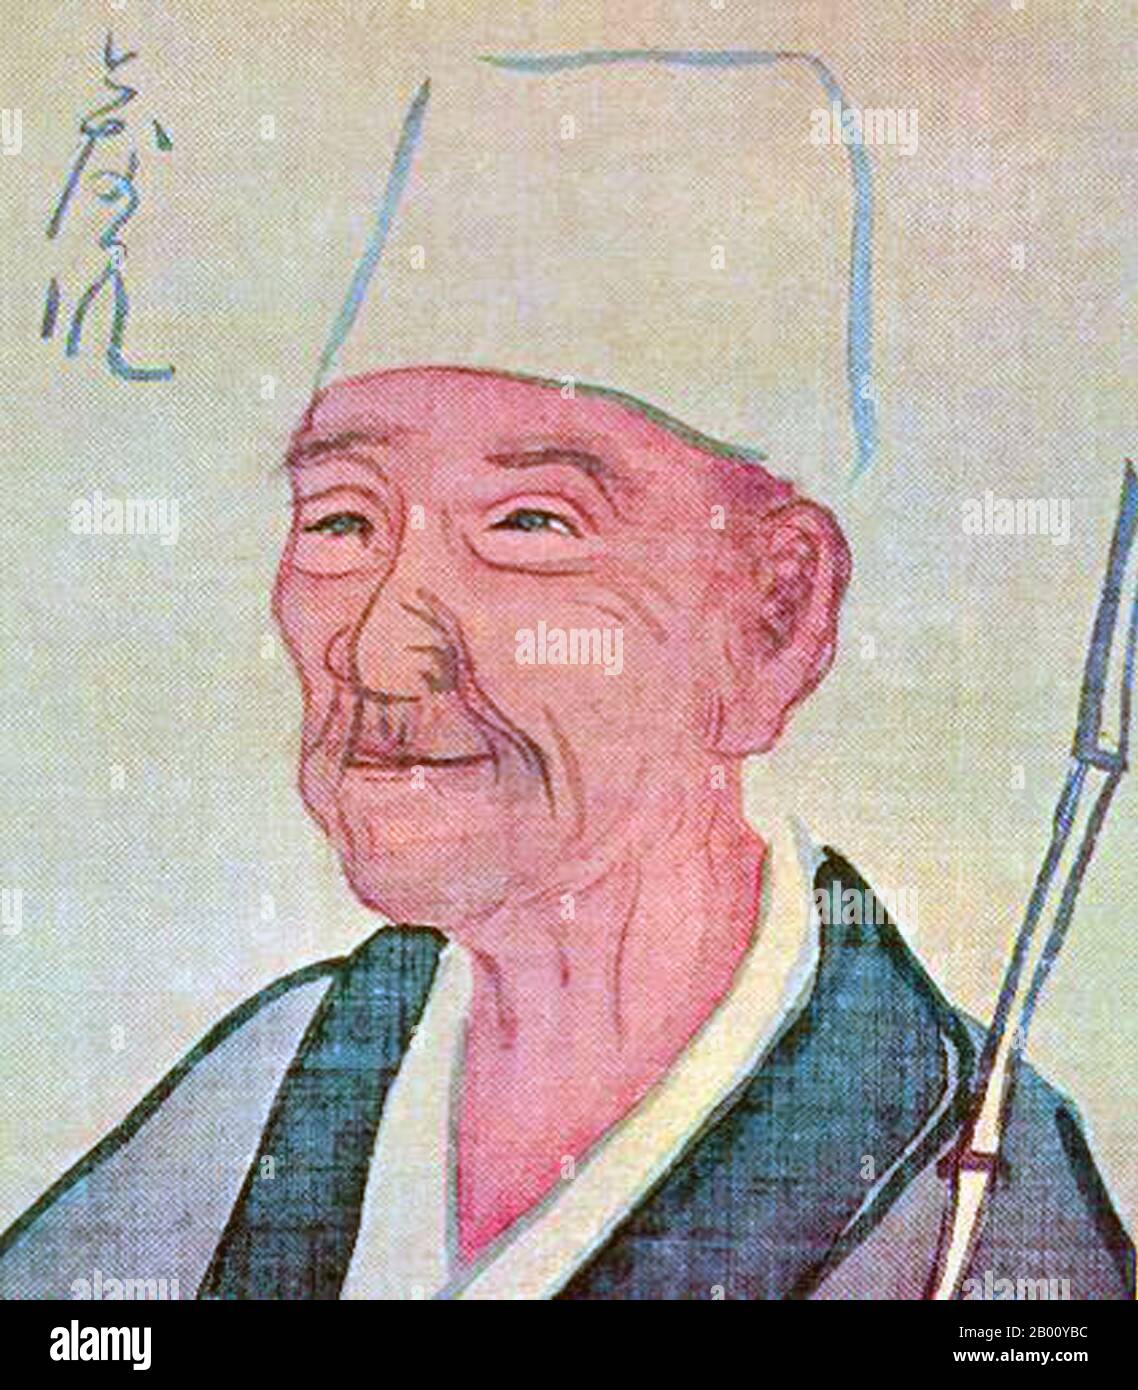 Japan: Matsuo Basho (1644-1694), Dichter und Schriftsteller, insbesondere von Haiku Vers, Edo-Periode (1603-1868). Matsuo Basho (1644 – 28. November 1694) war der berühmteste Dichter der Edo-Zeit in Japan. Zu seinen Lebzeiten wurde Basho für seine Werke in der kollaborativen Haikai no renga-Form anerkannt; heute, nach Jahrhunderten der Kommentare, wird er als Meister des kurzen und klaren Haiku anerkannt. Seine Gedichte sind international bekannt, und innerhalb Japans werden viele seiner Gedichte auf Denkmälern und traditionellen Stätten reproduziert. Stockfoto